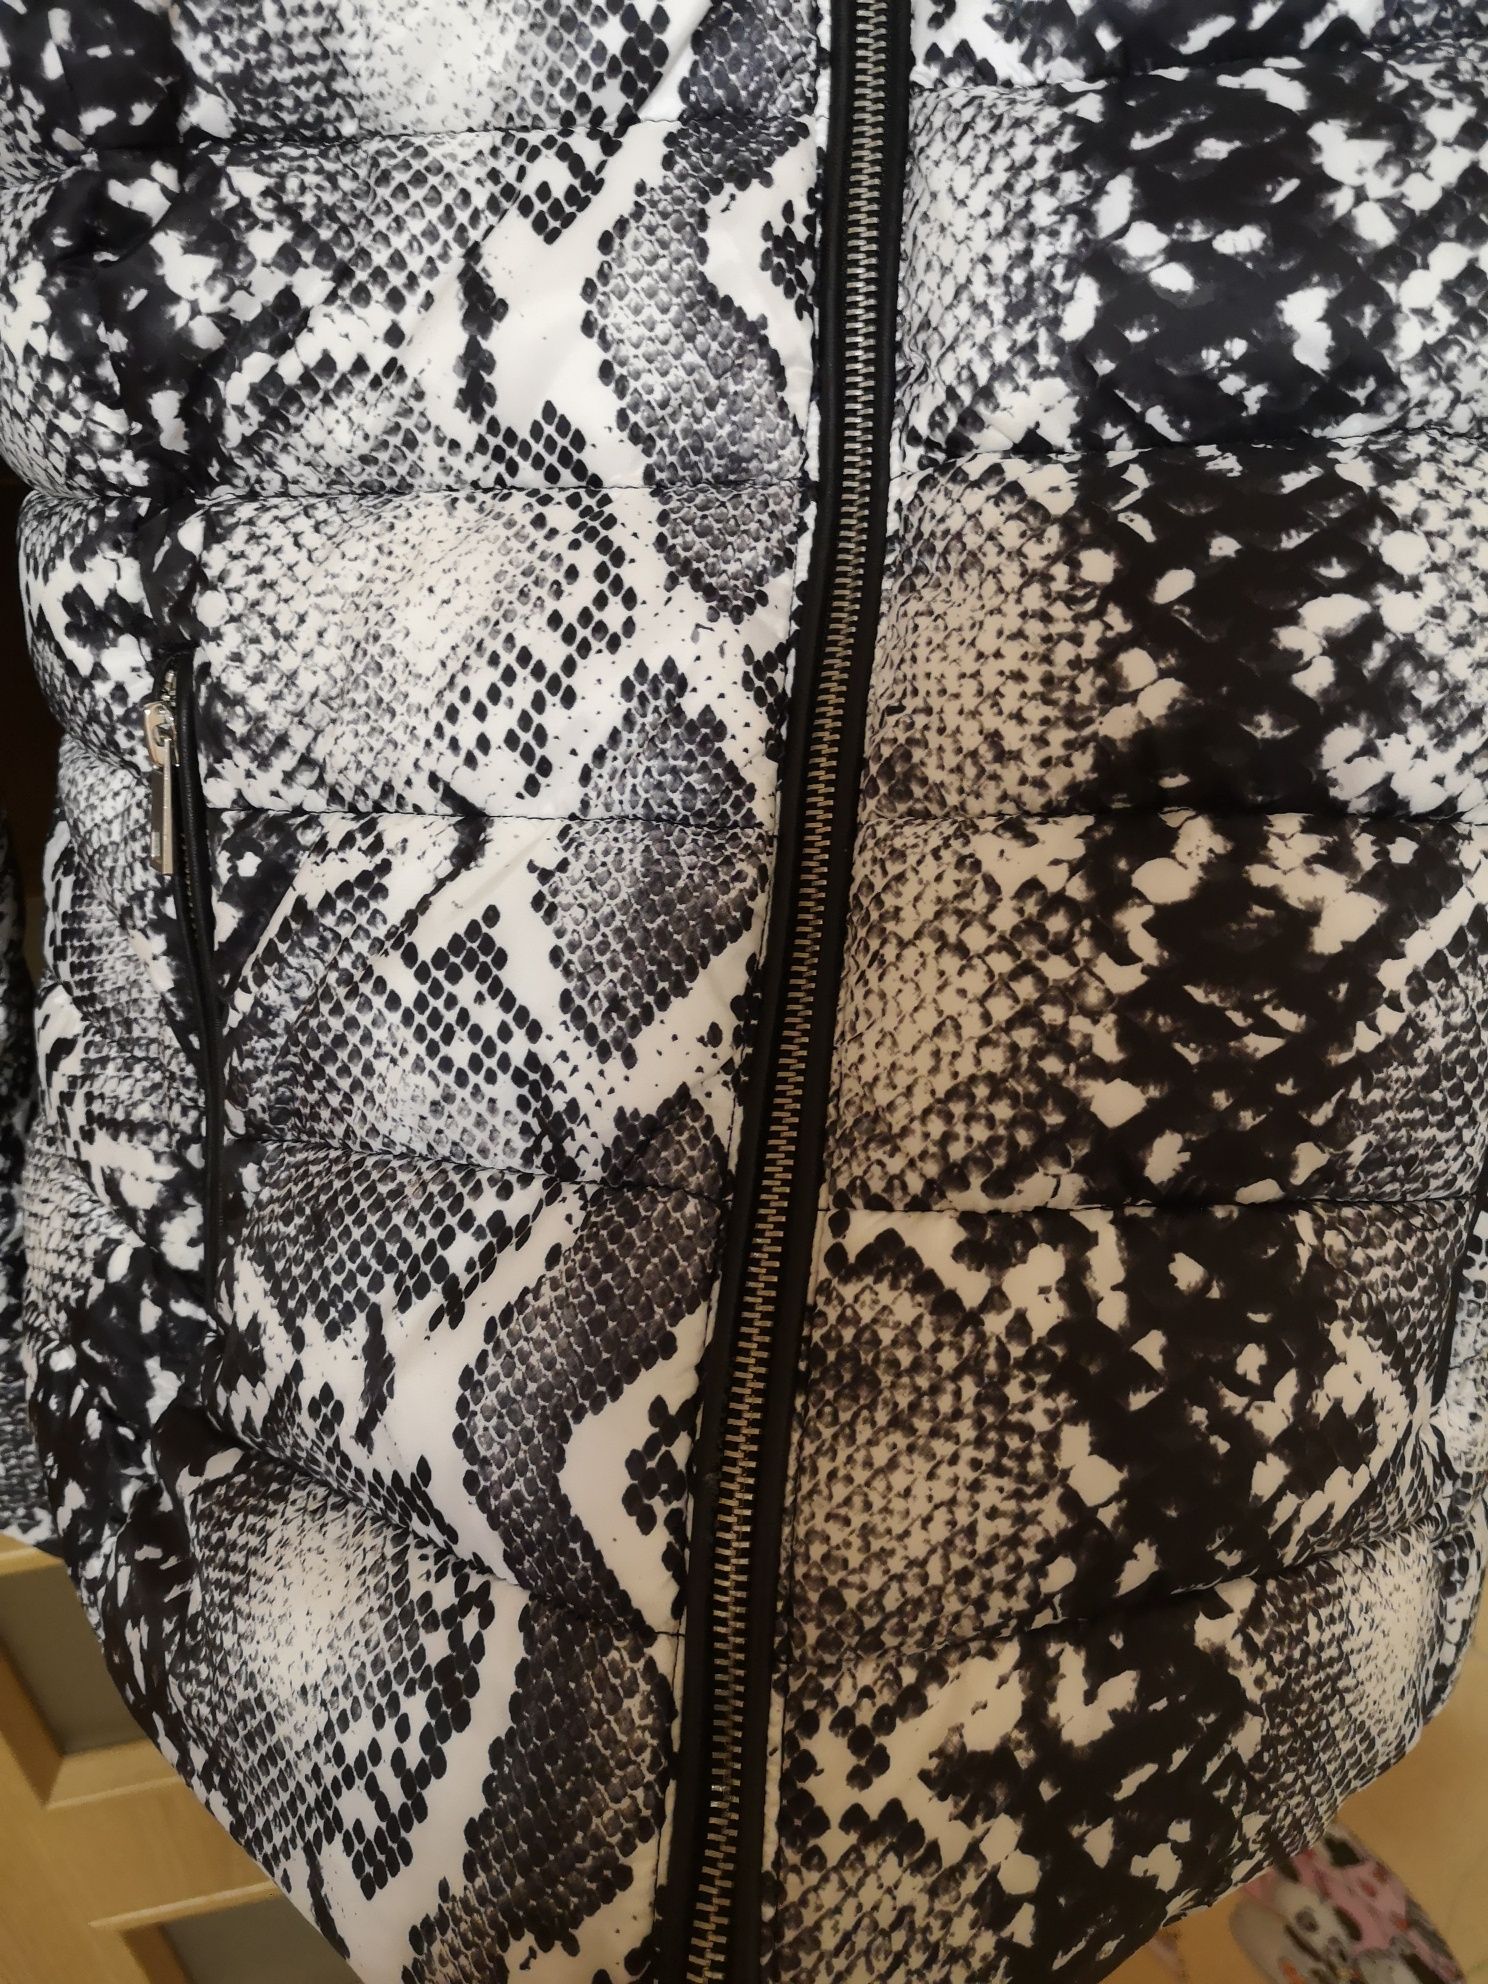 Куртка зимняя Zara xs(34),пуффер Zara, куртка жіноча Zara